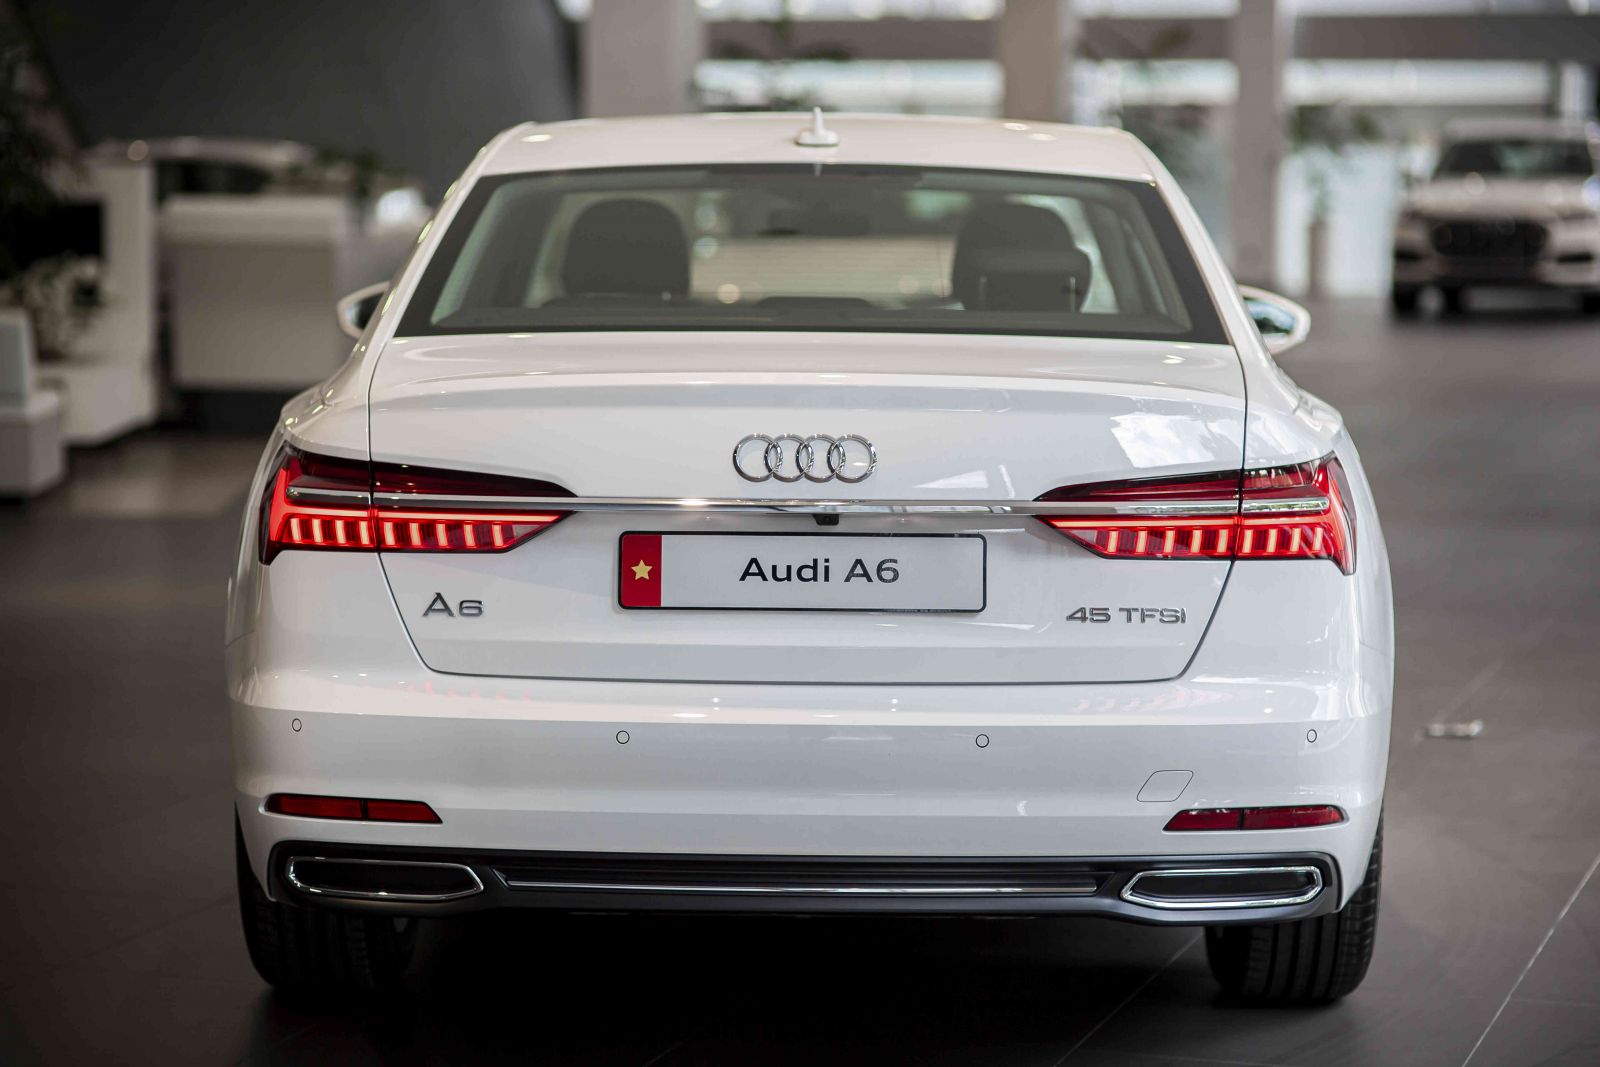  Ở thế hệ mới, Audi A6 2023 có phần đuôi được tạo hình gọn gàng, trẻ trung hơn